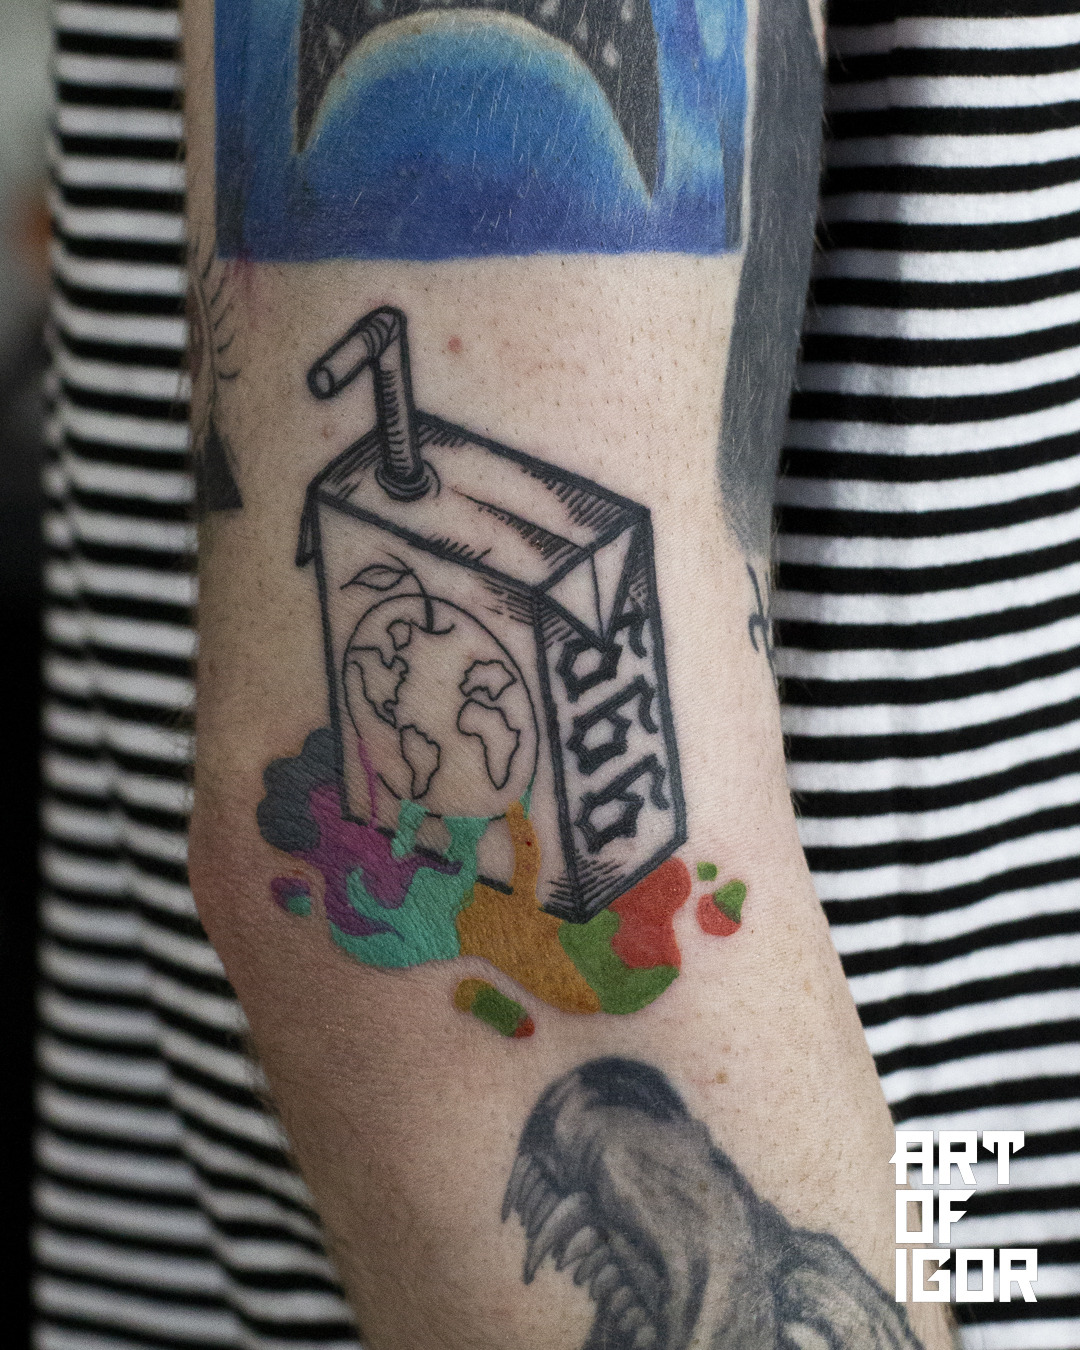 Single needle juice box tattoo located on the inner